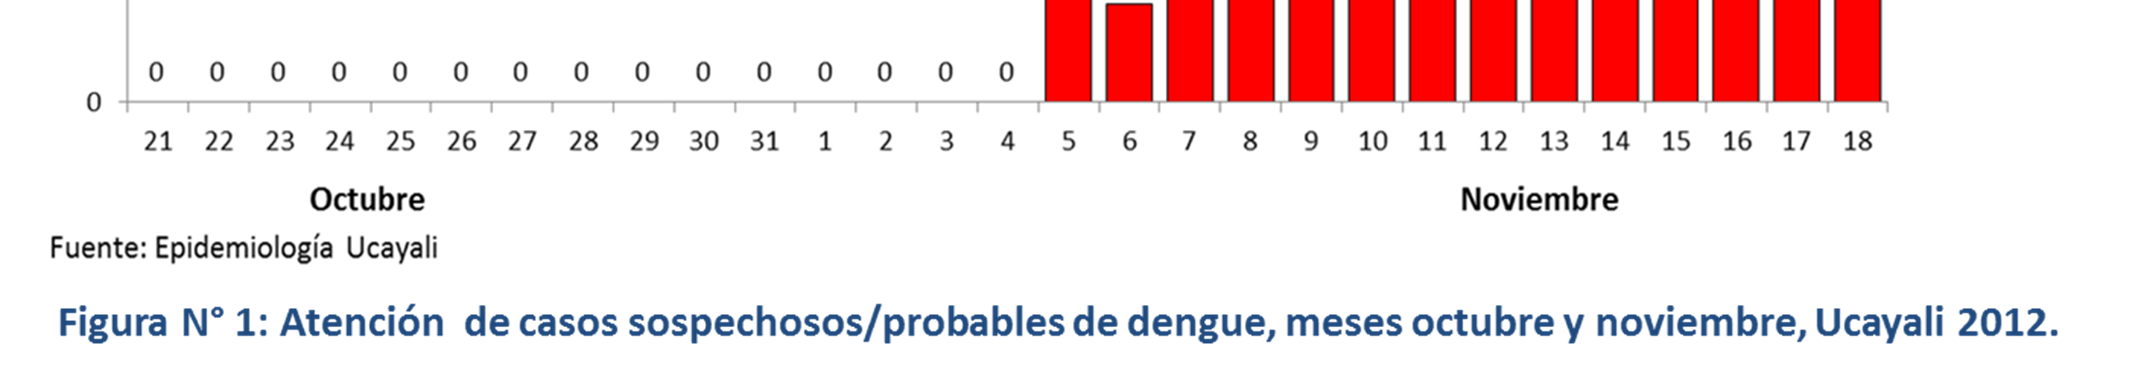 200 180 160 Muerte dengue confirmado Muerte dengue probable 187 181 168 154 Sugerencia para citar: Brote de dengue en los distritos de Callería, Manantay y Yarinacocha, provincia de Coronel Portillo,